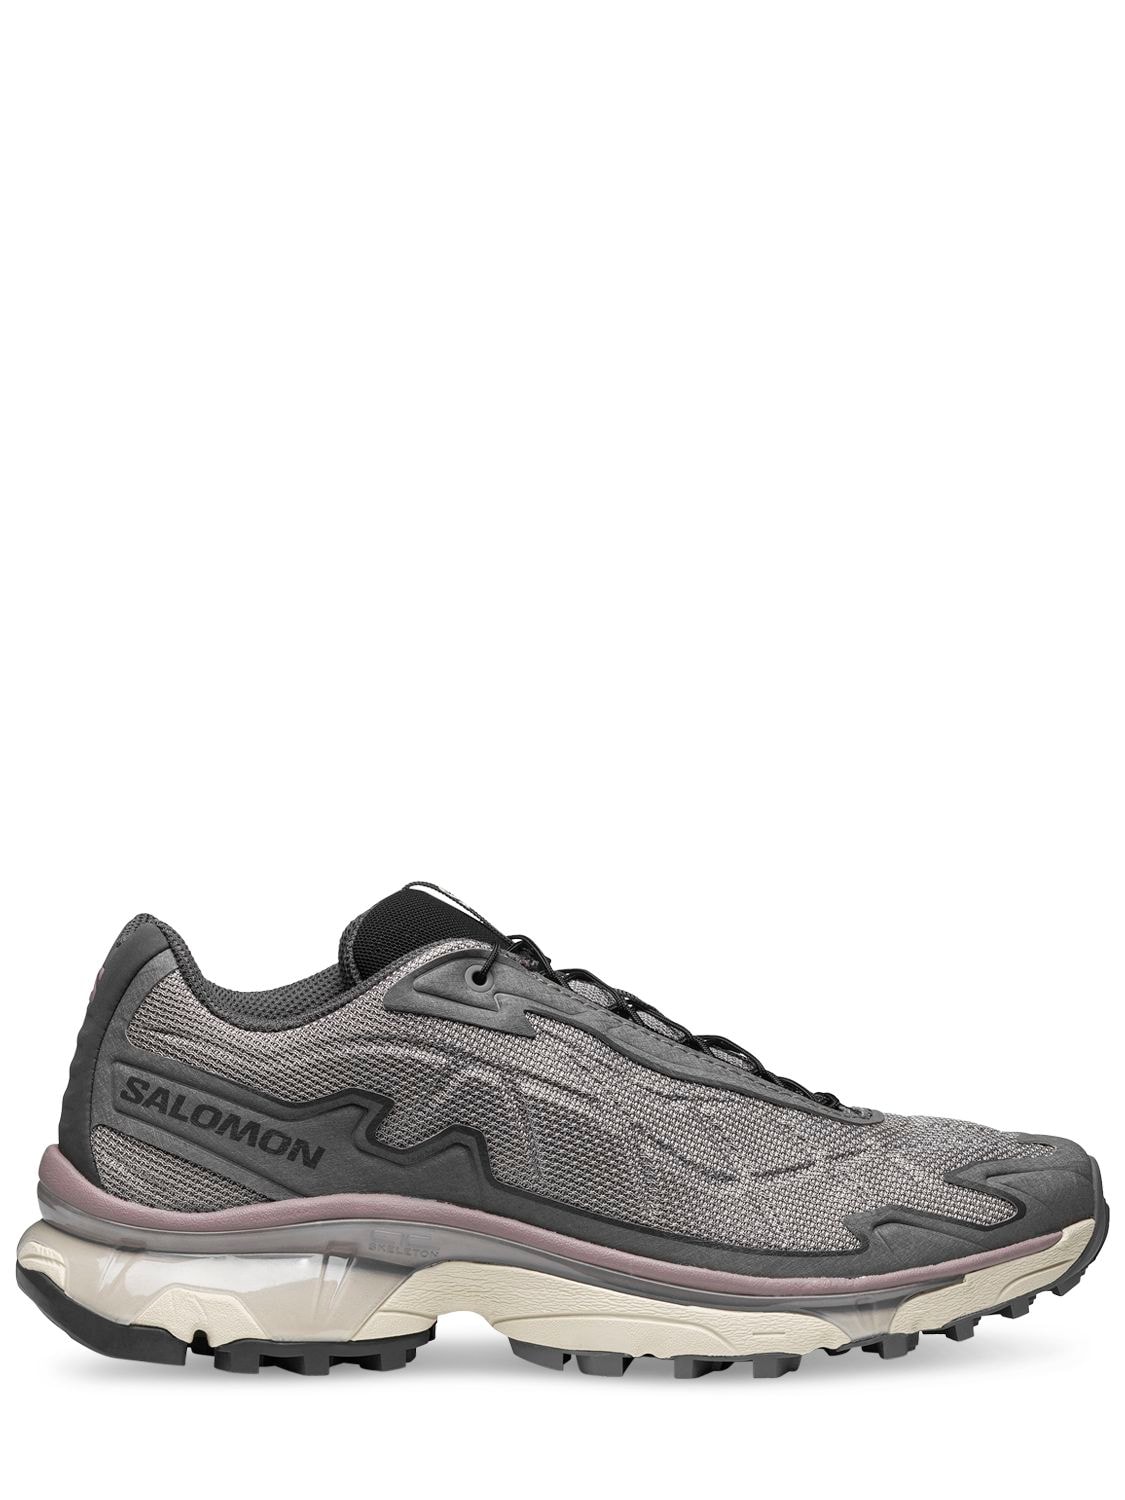 Salomon Xt-slate Advanced Sneakers In Grey | ModeSens